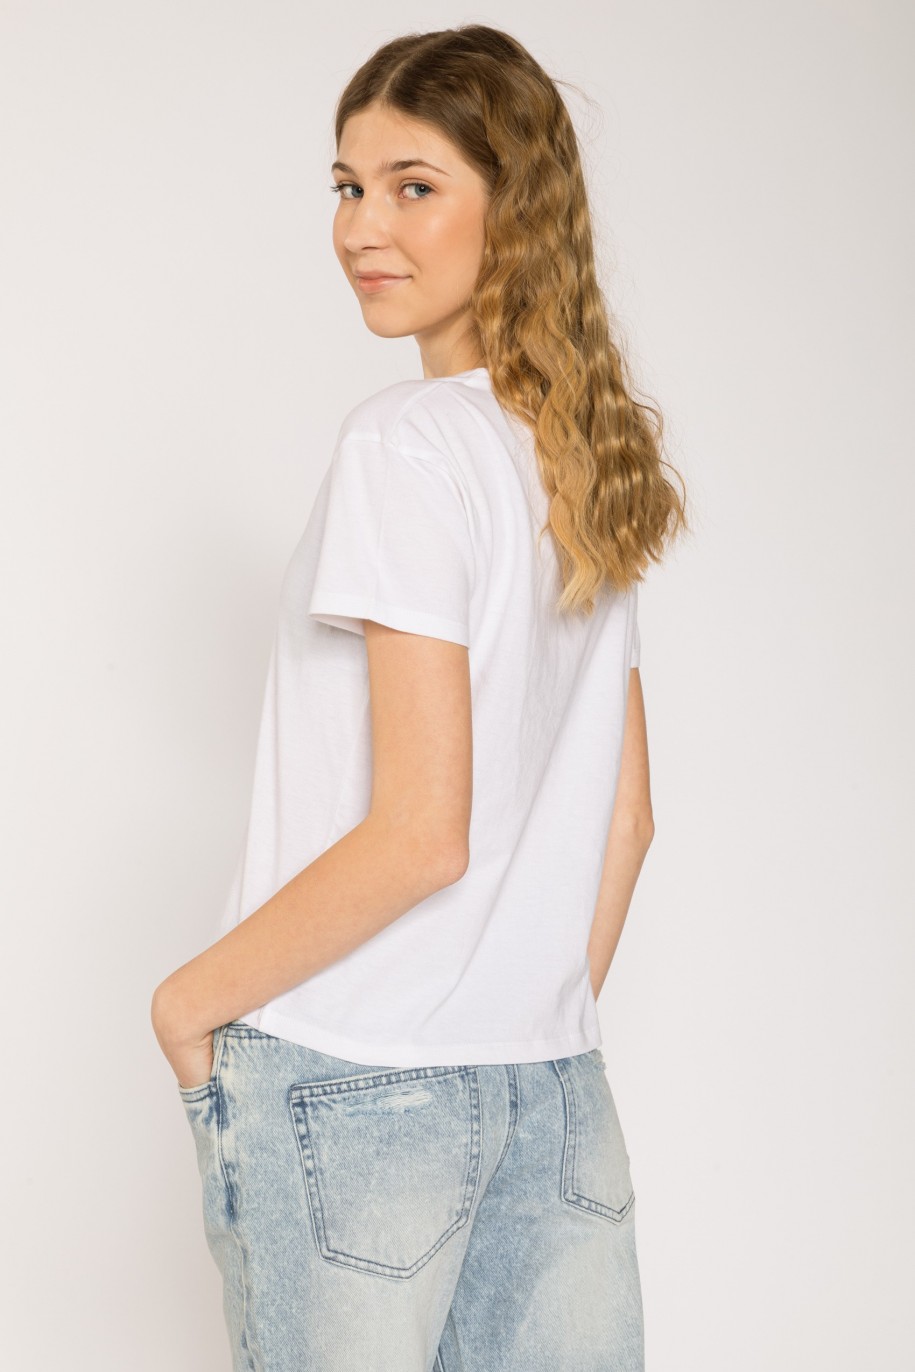 Biały T-shirt dla dziewczyny VILLAINS - 26995